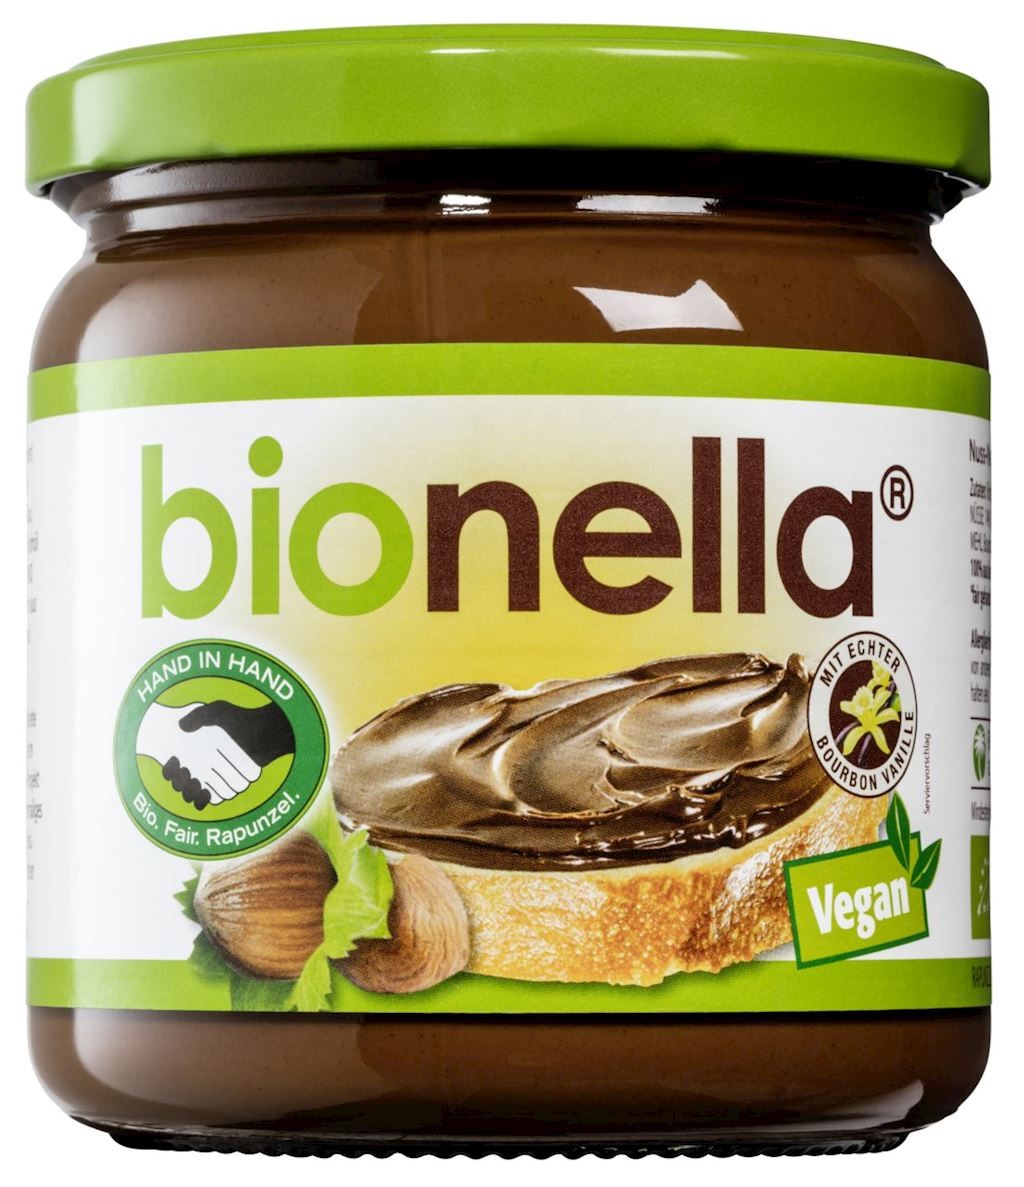 Crema de nueces y cacao Bionella BIO